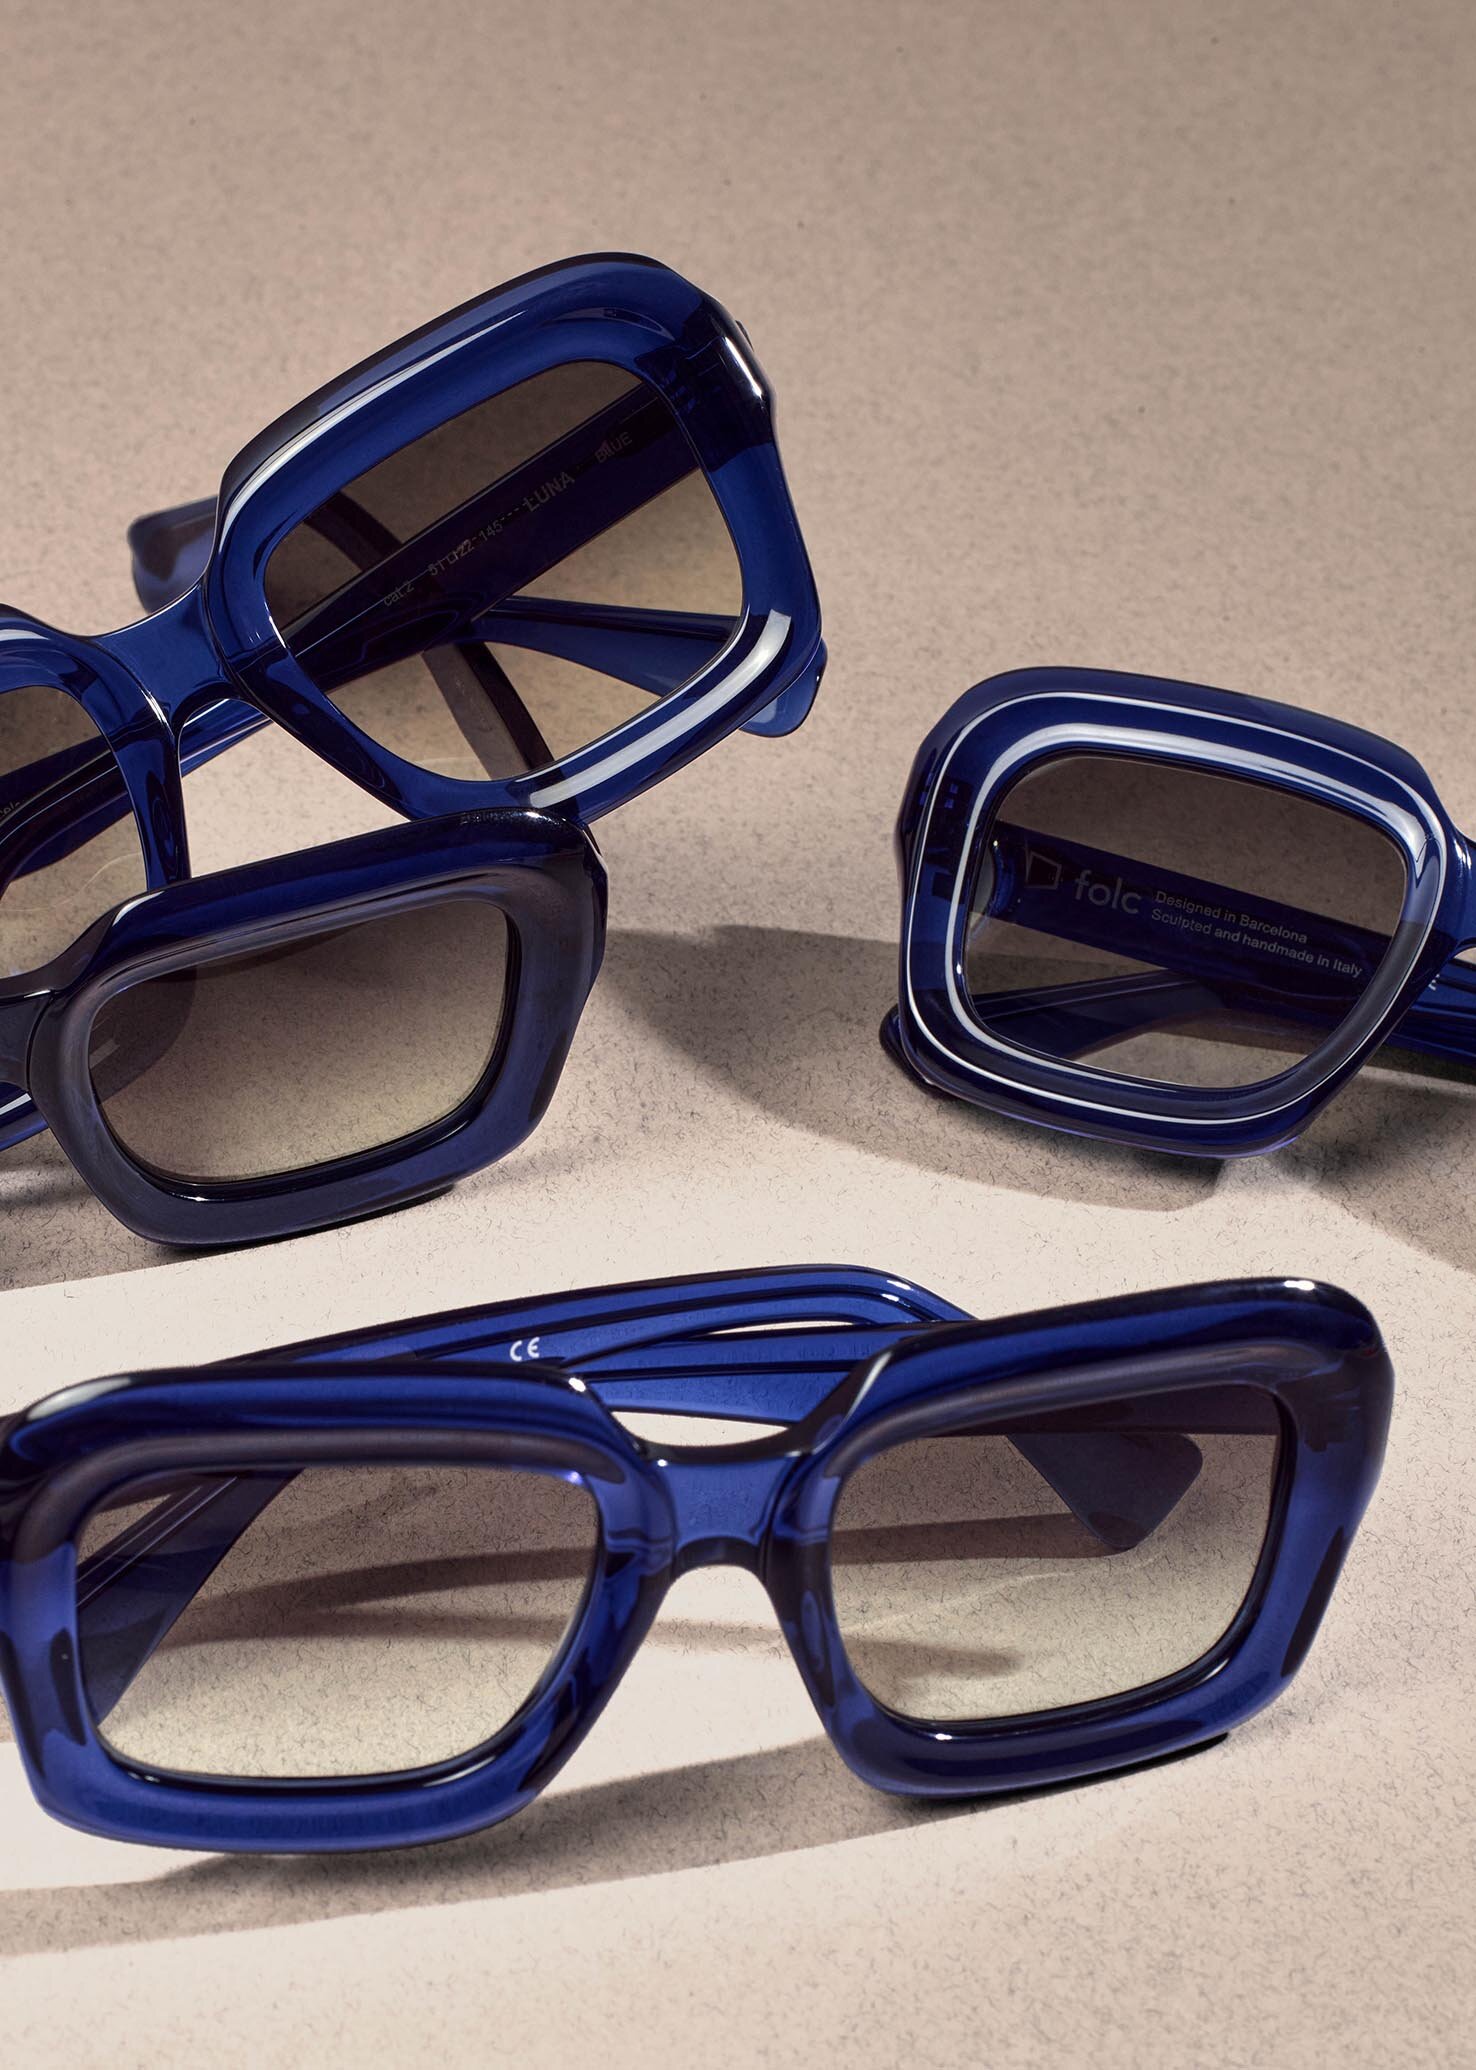 Luna Blue -  Folc eyewear - lr 2.jpg